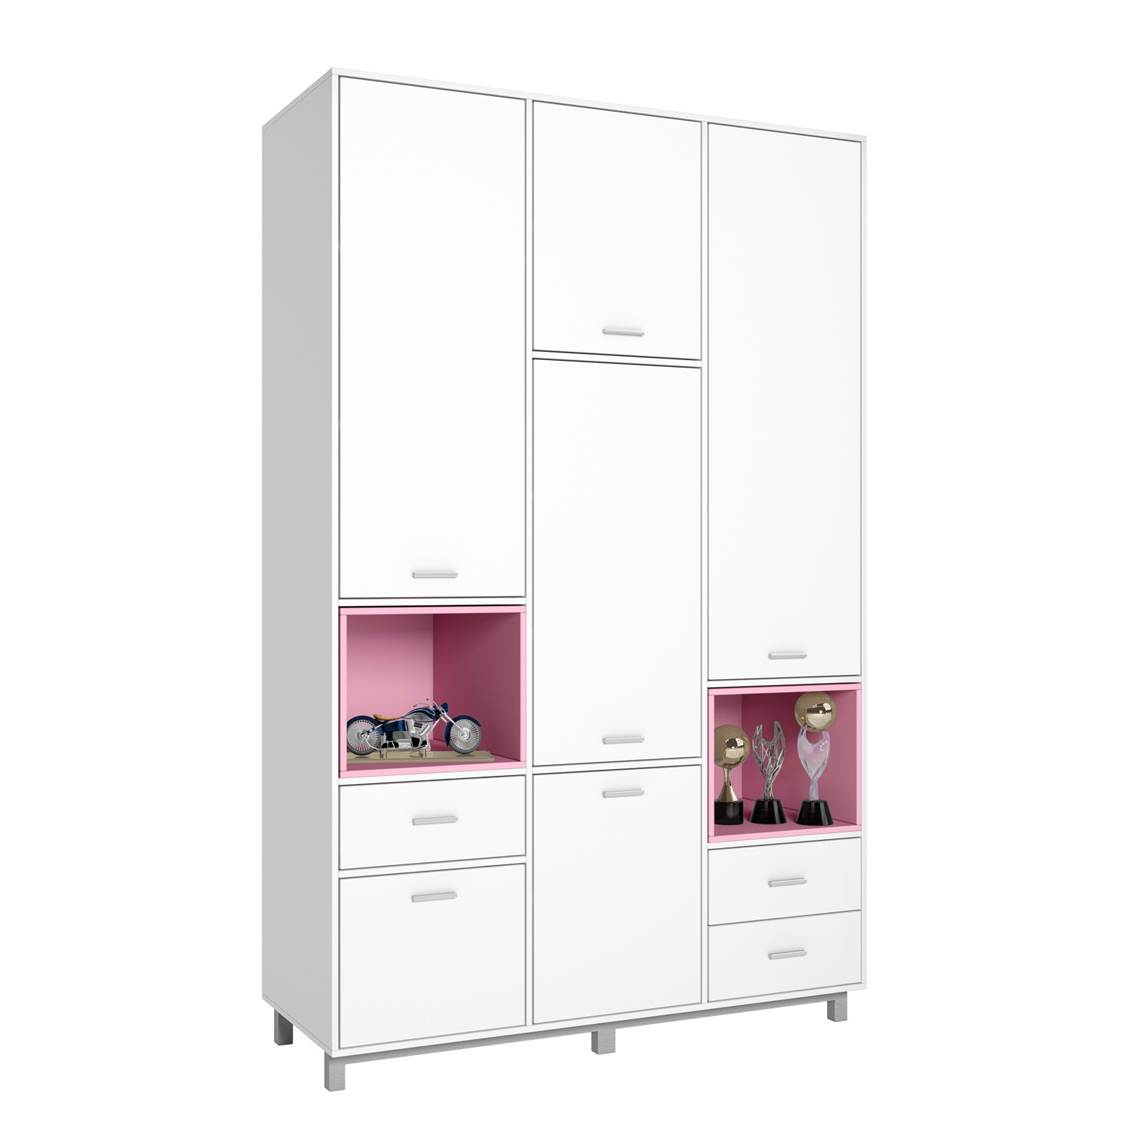 Детский шкаф трехсекционный Polini kids Mirum 2335, белый/розовый